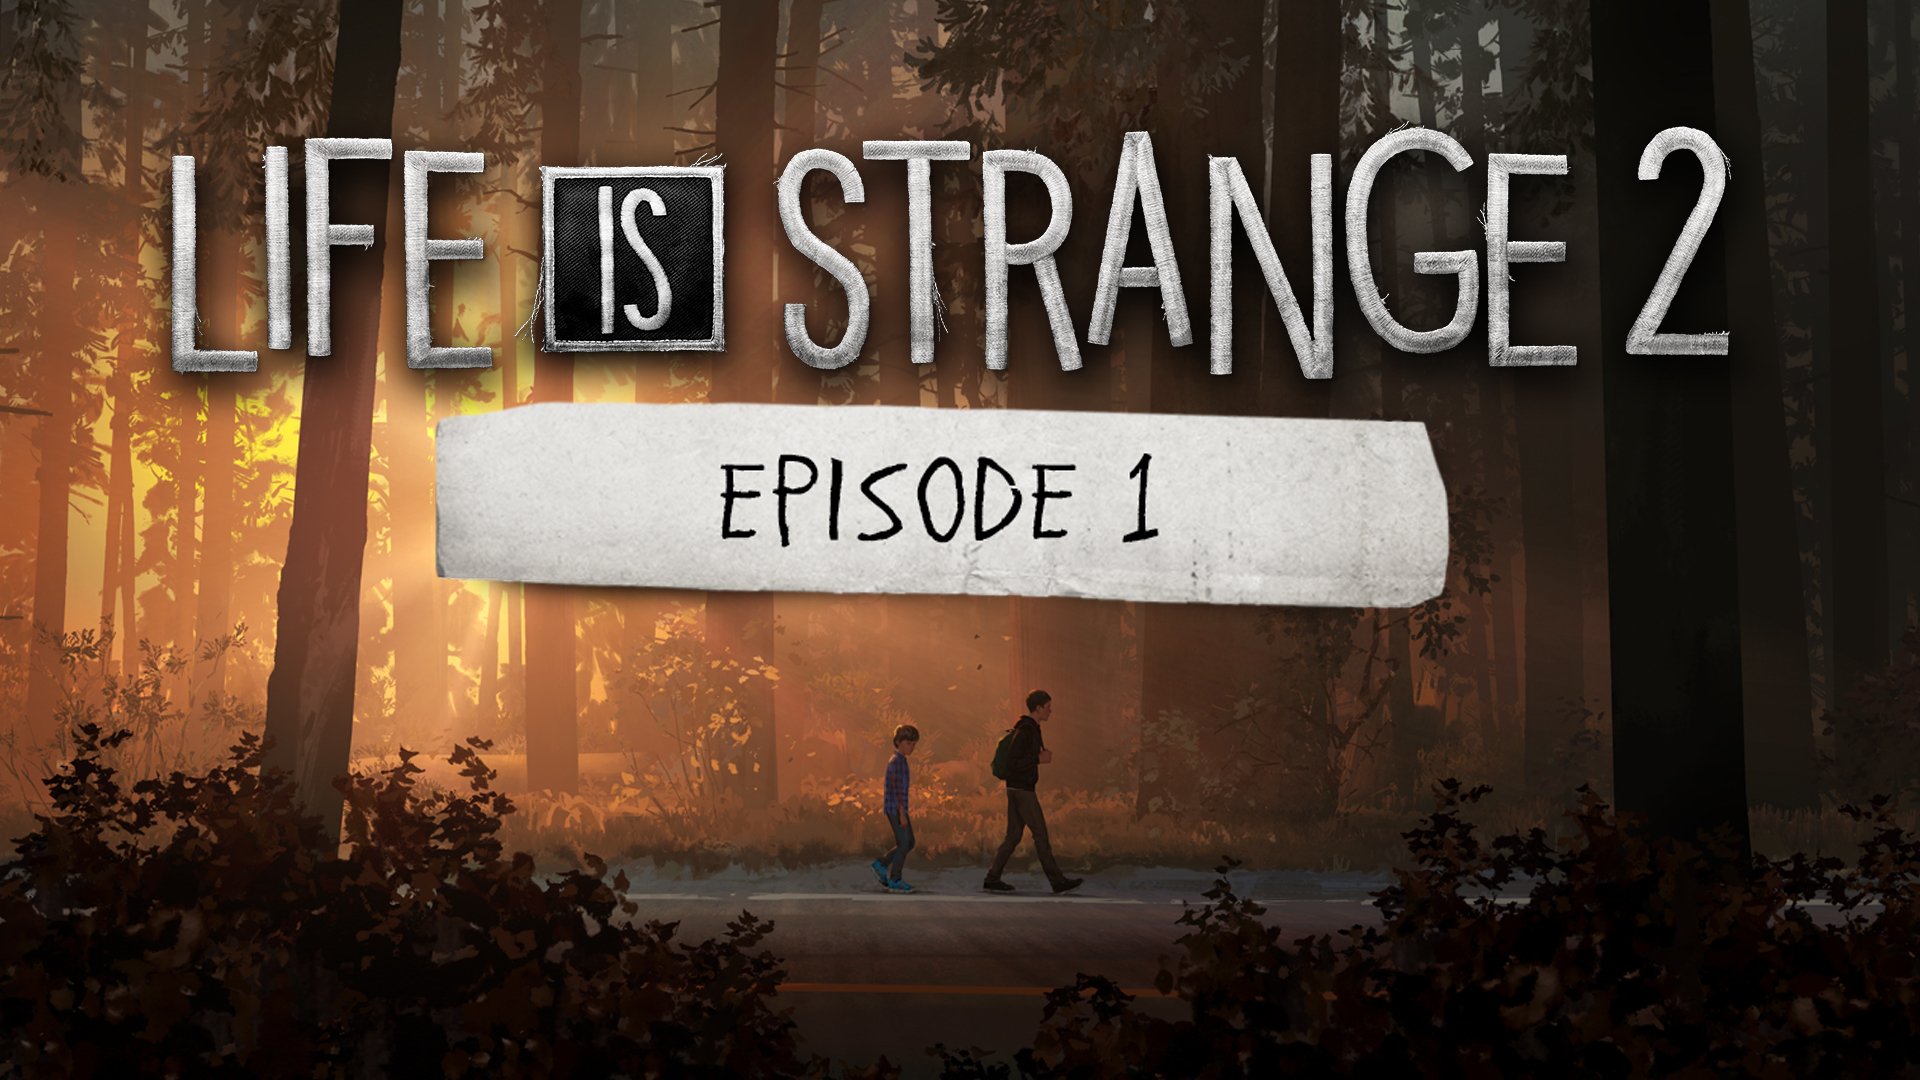 Publicado pela Square Enix e desenvolvido pelo estúdio Dontnod, o 1° episódio de Life is Strange 2 estará gratuito a partir de hoje(17).